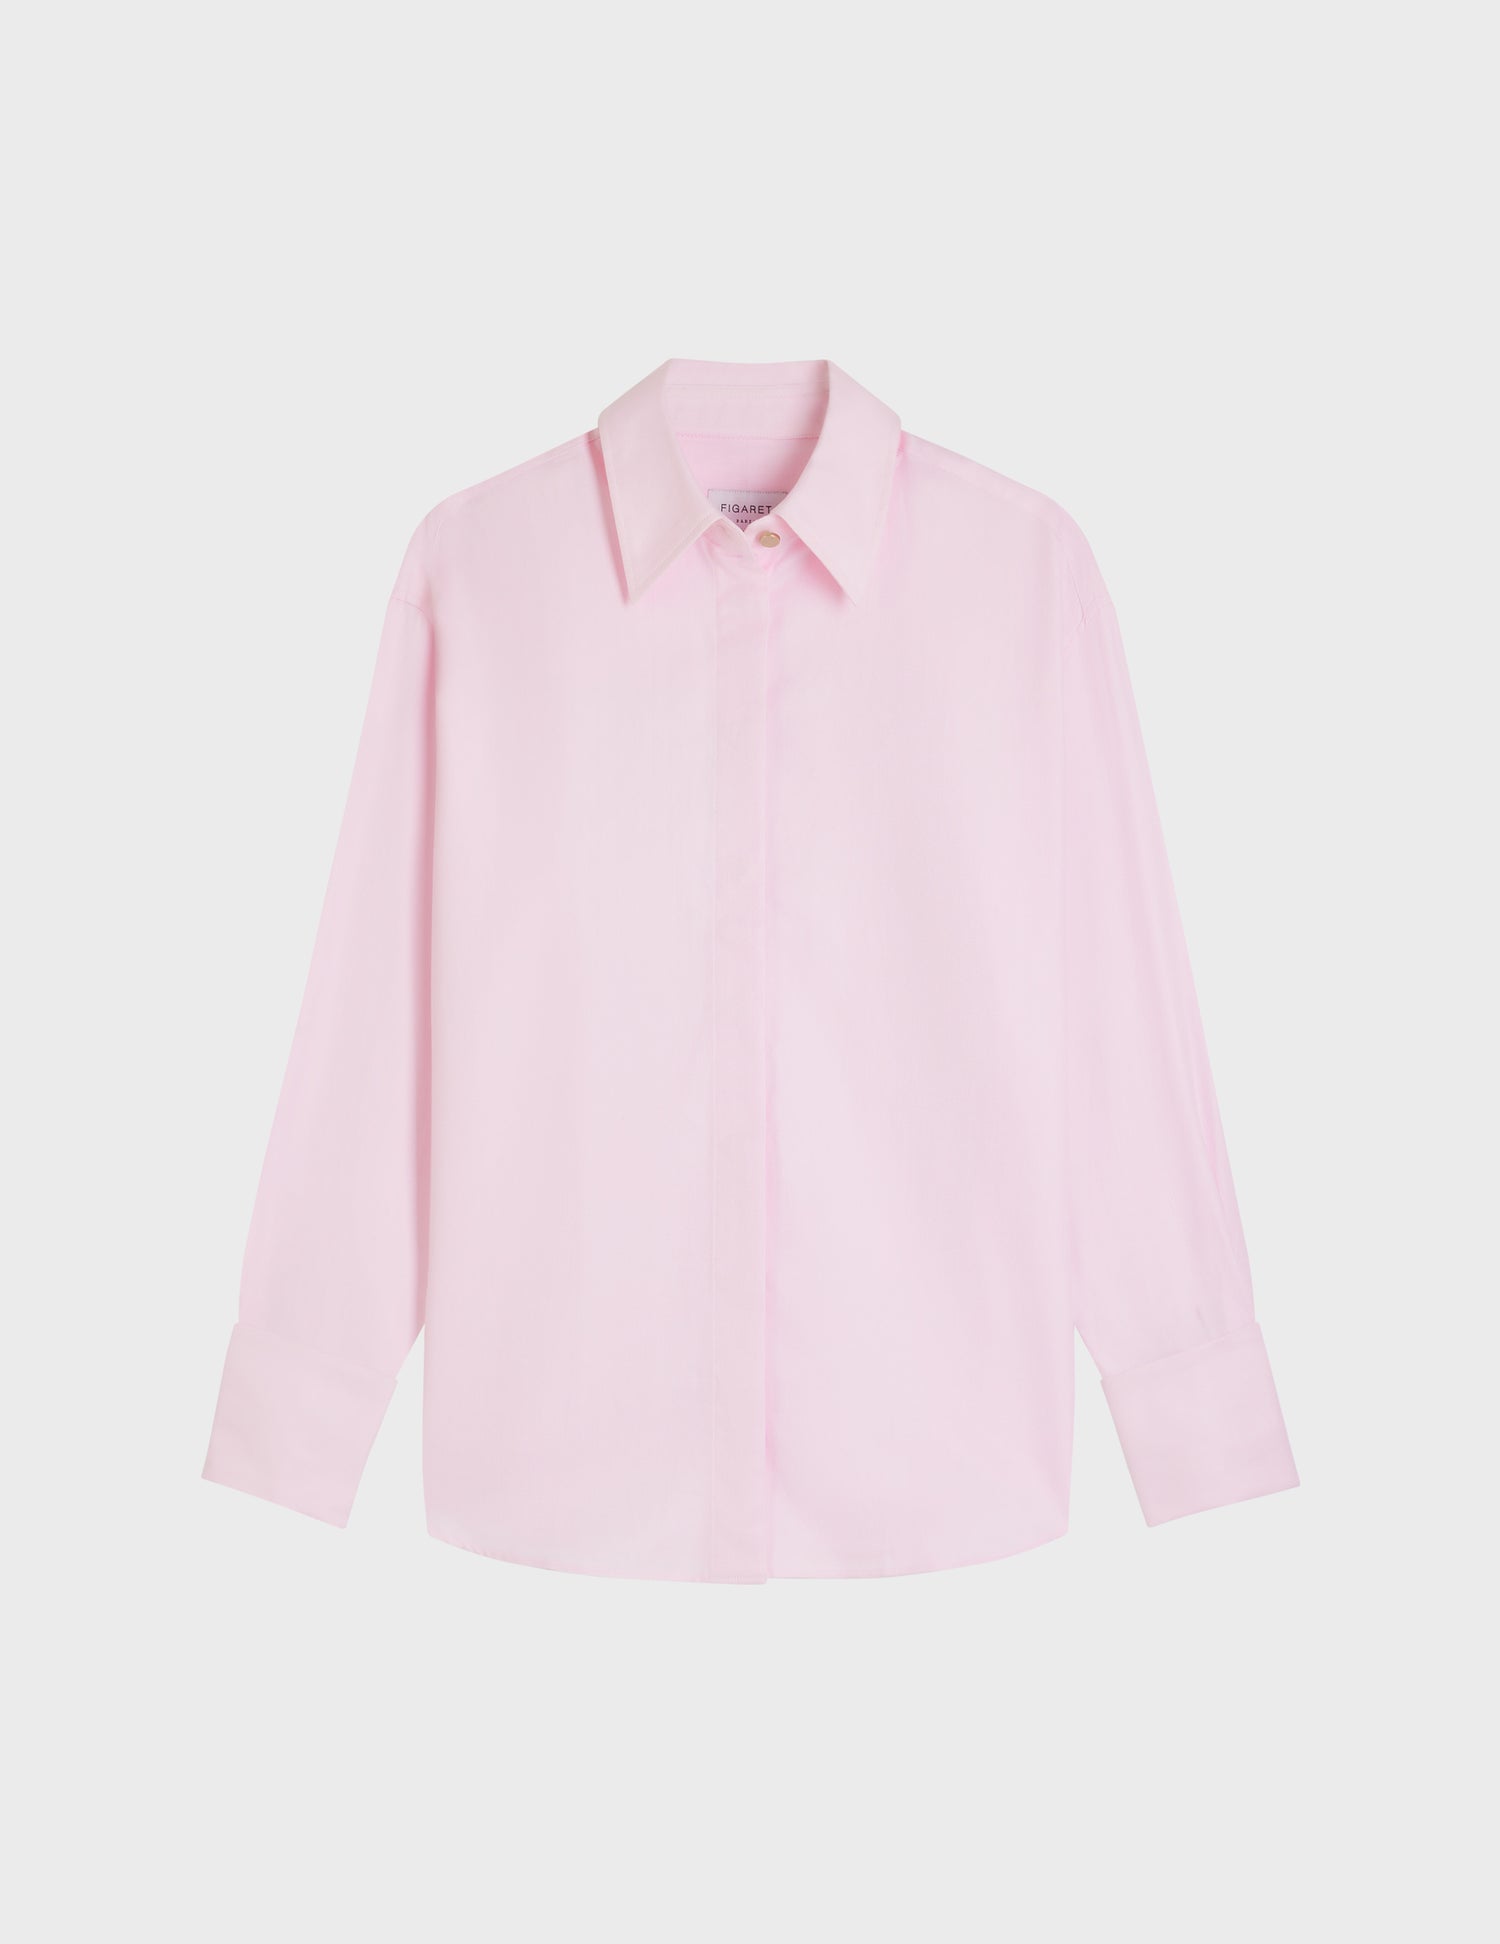 Hillie Hidden button placket pink shirt - Chevron - Shirt Collar - Musketeers Cuffs#4